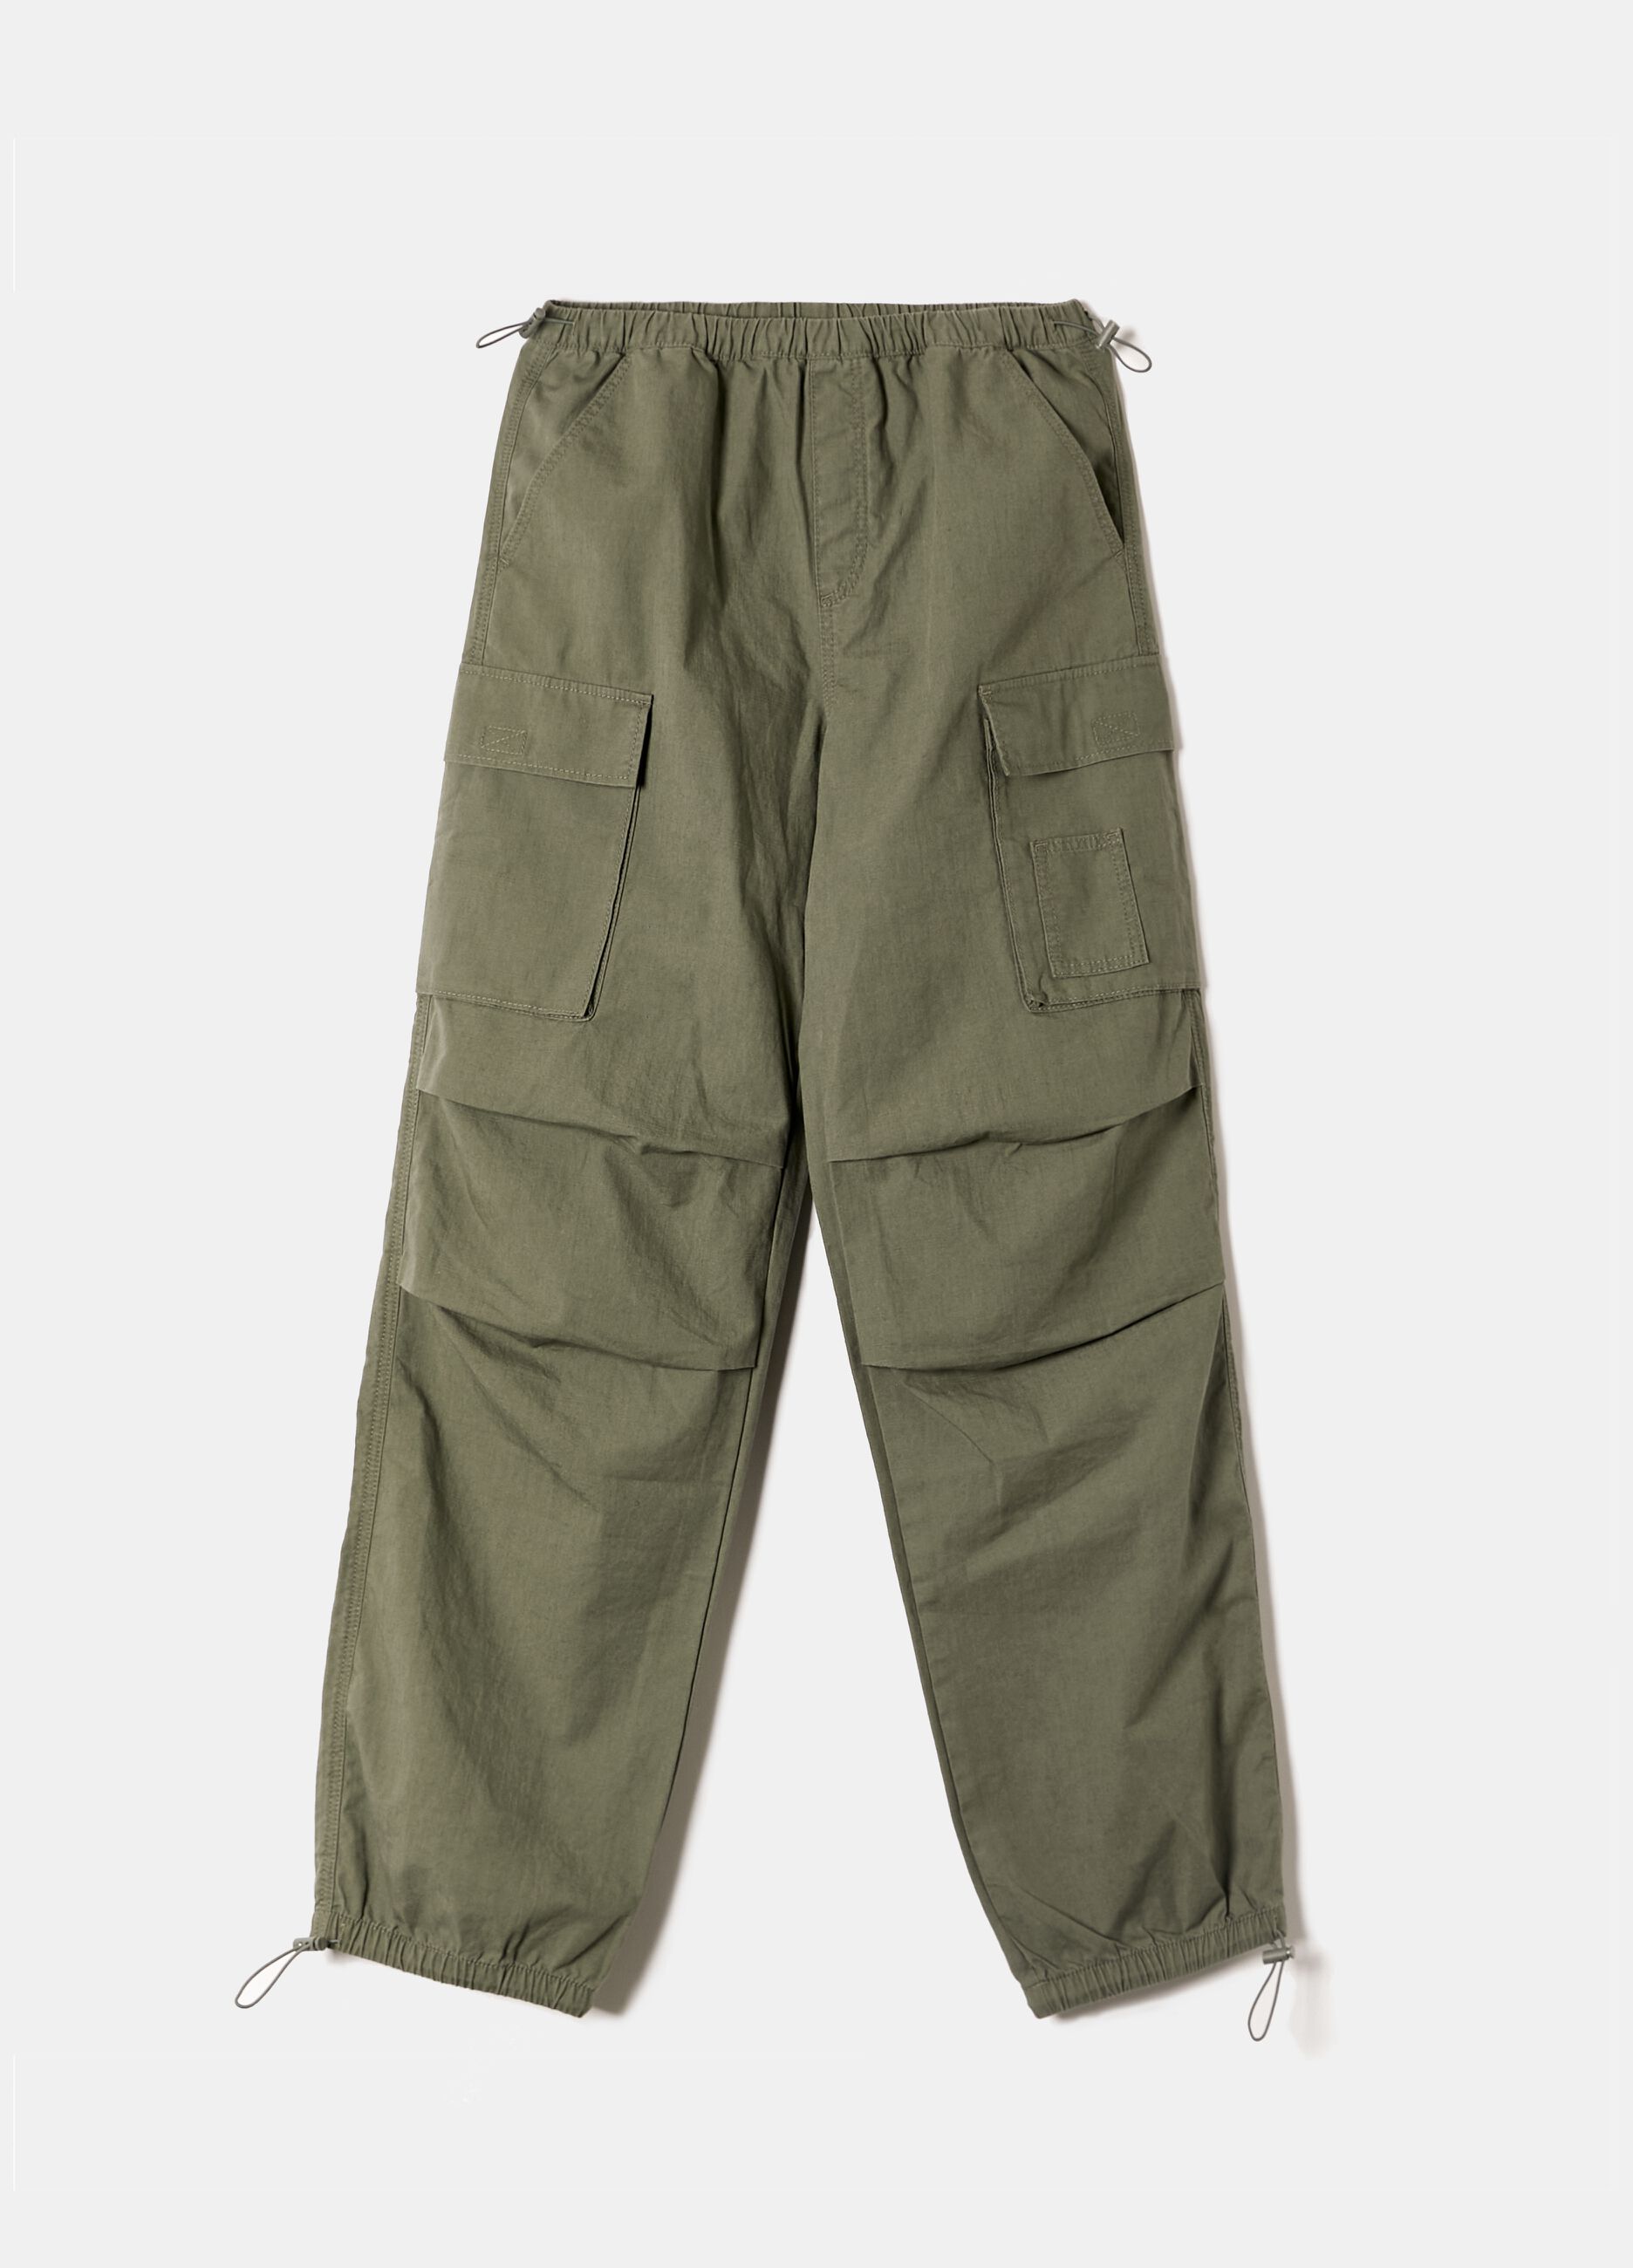 Cotton parachute trousers